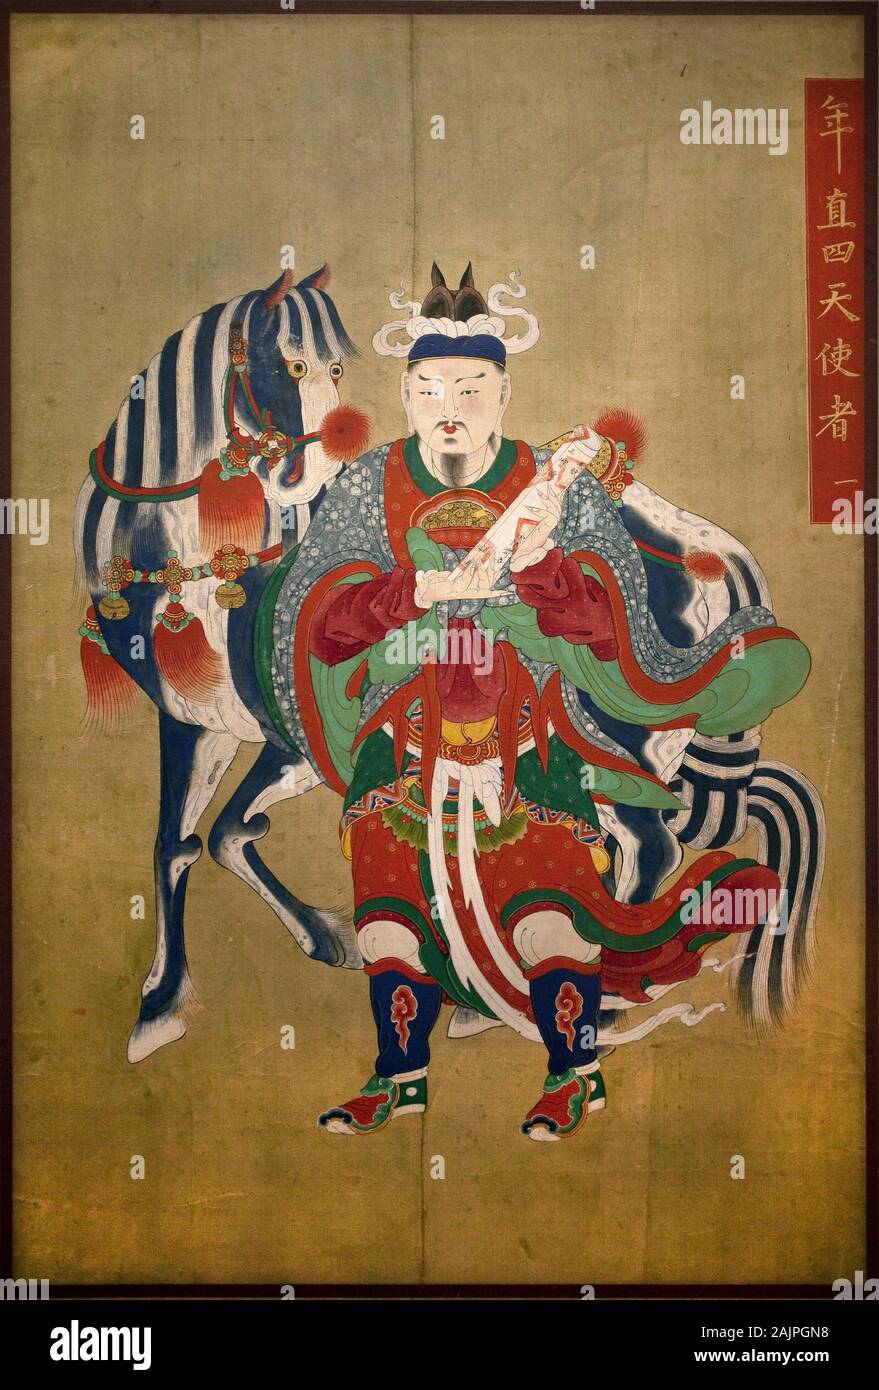 Messager de l'enfer. Peinture sur soie, fin Choson (Joseon) (1392-1910). Art coreen. Musee national de Coree, Seoul (Coree du Sud). Stock Photo